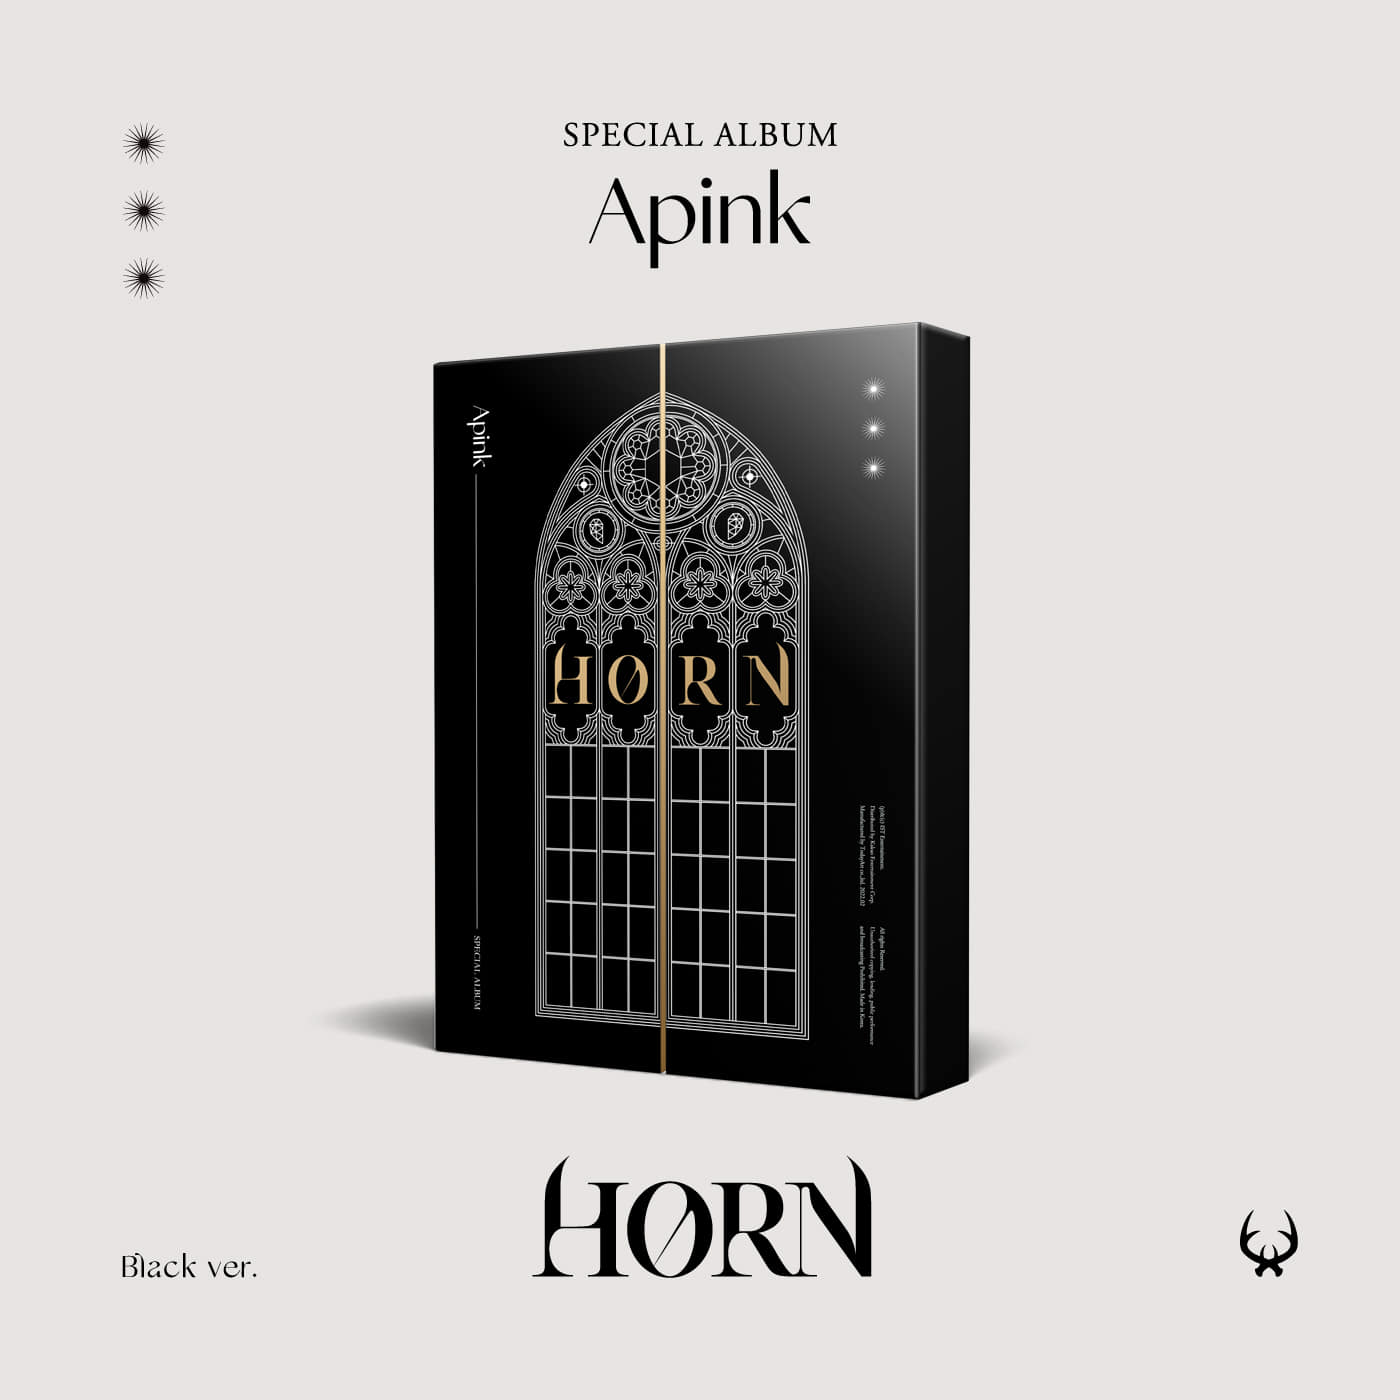 에이핑크(Apink) - 스페셜 앨범 [HORN] (Black Ver.)